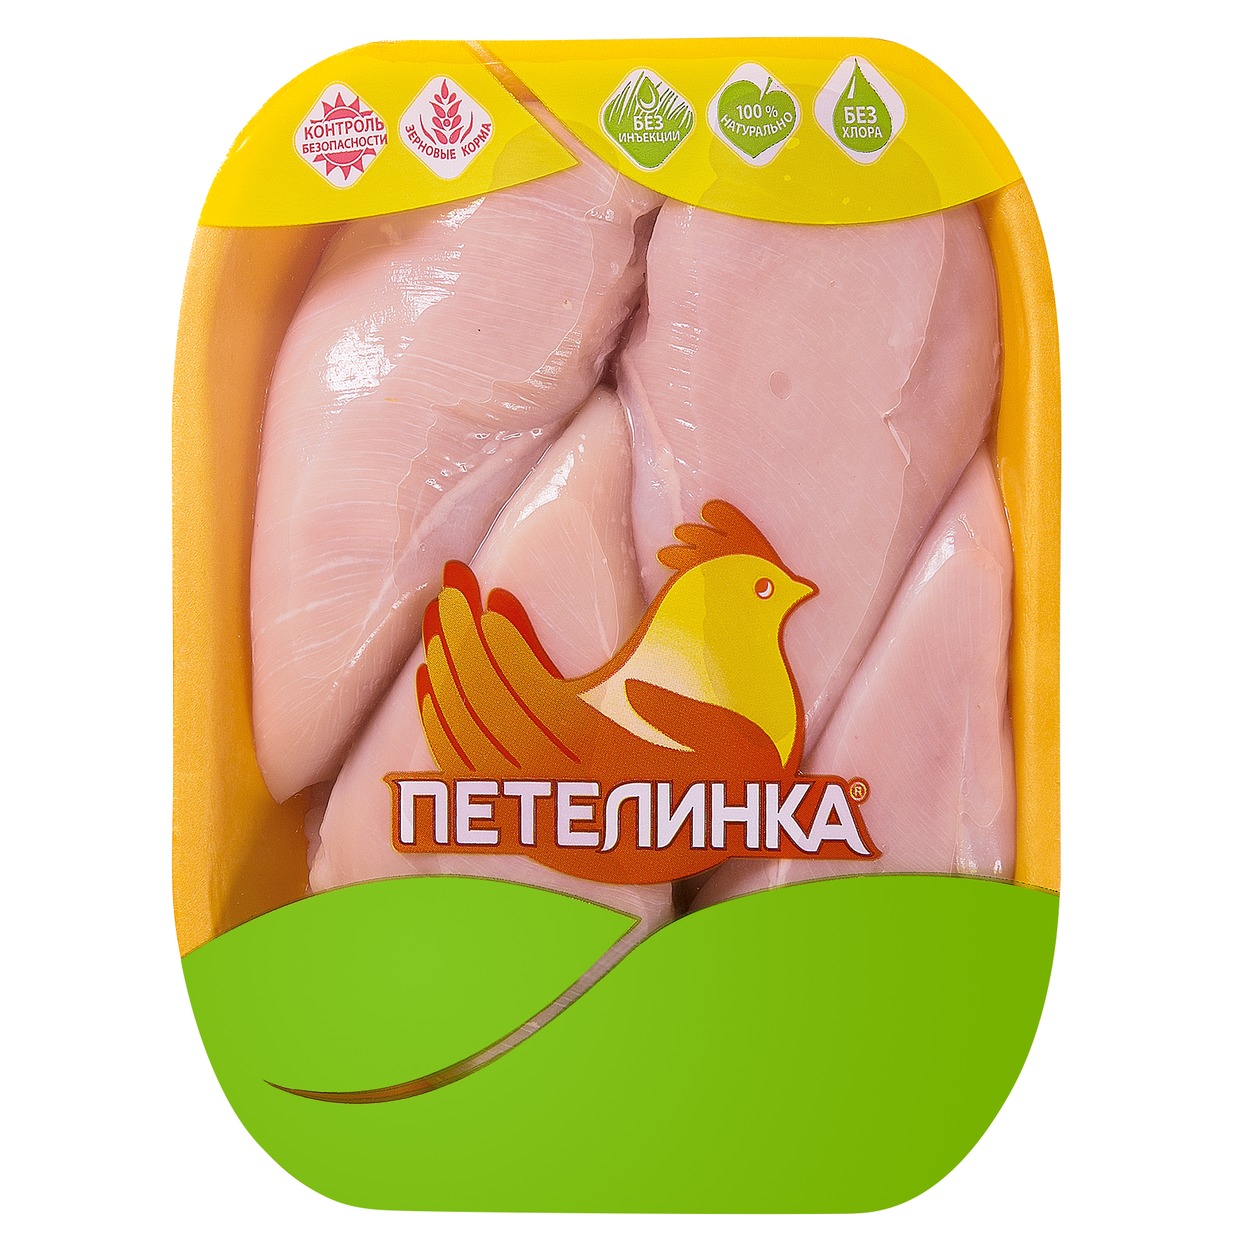 Филе цыпленка, Петелинка, 1 кг по акции в Пятерочке